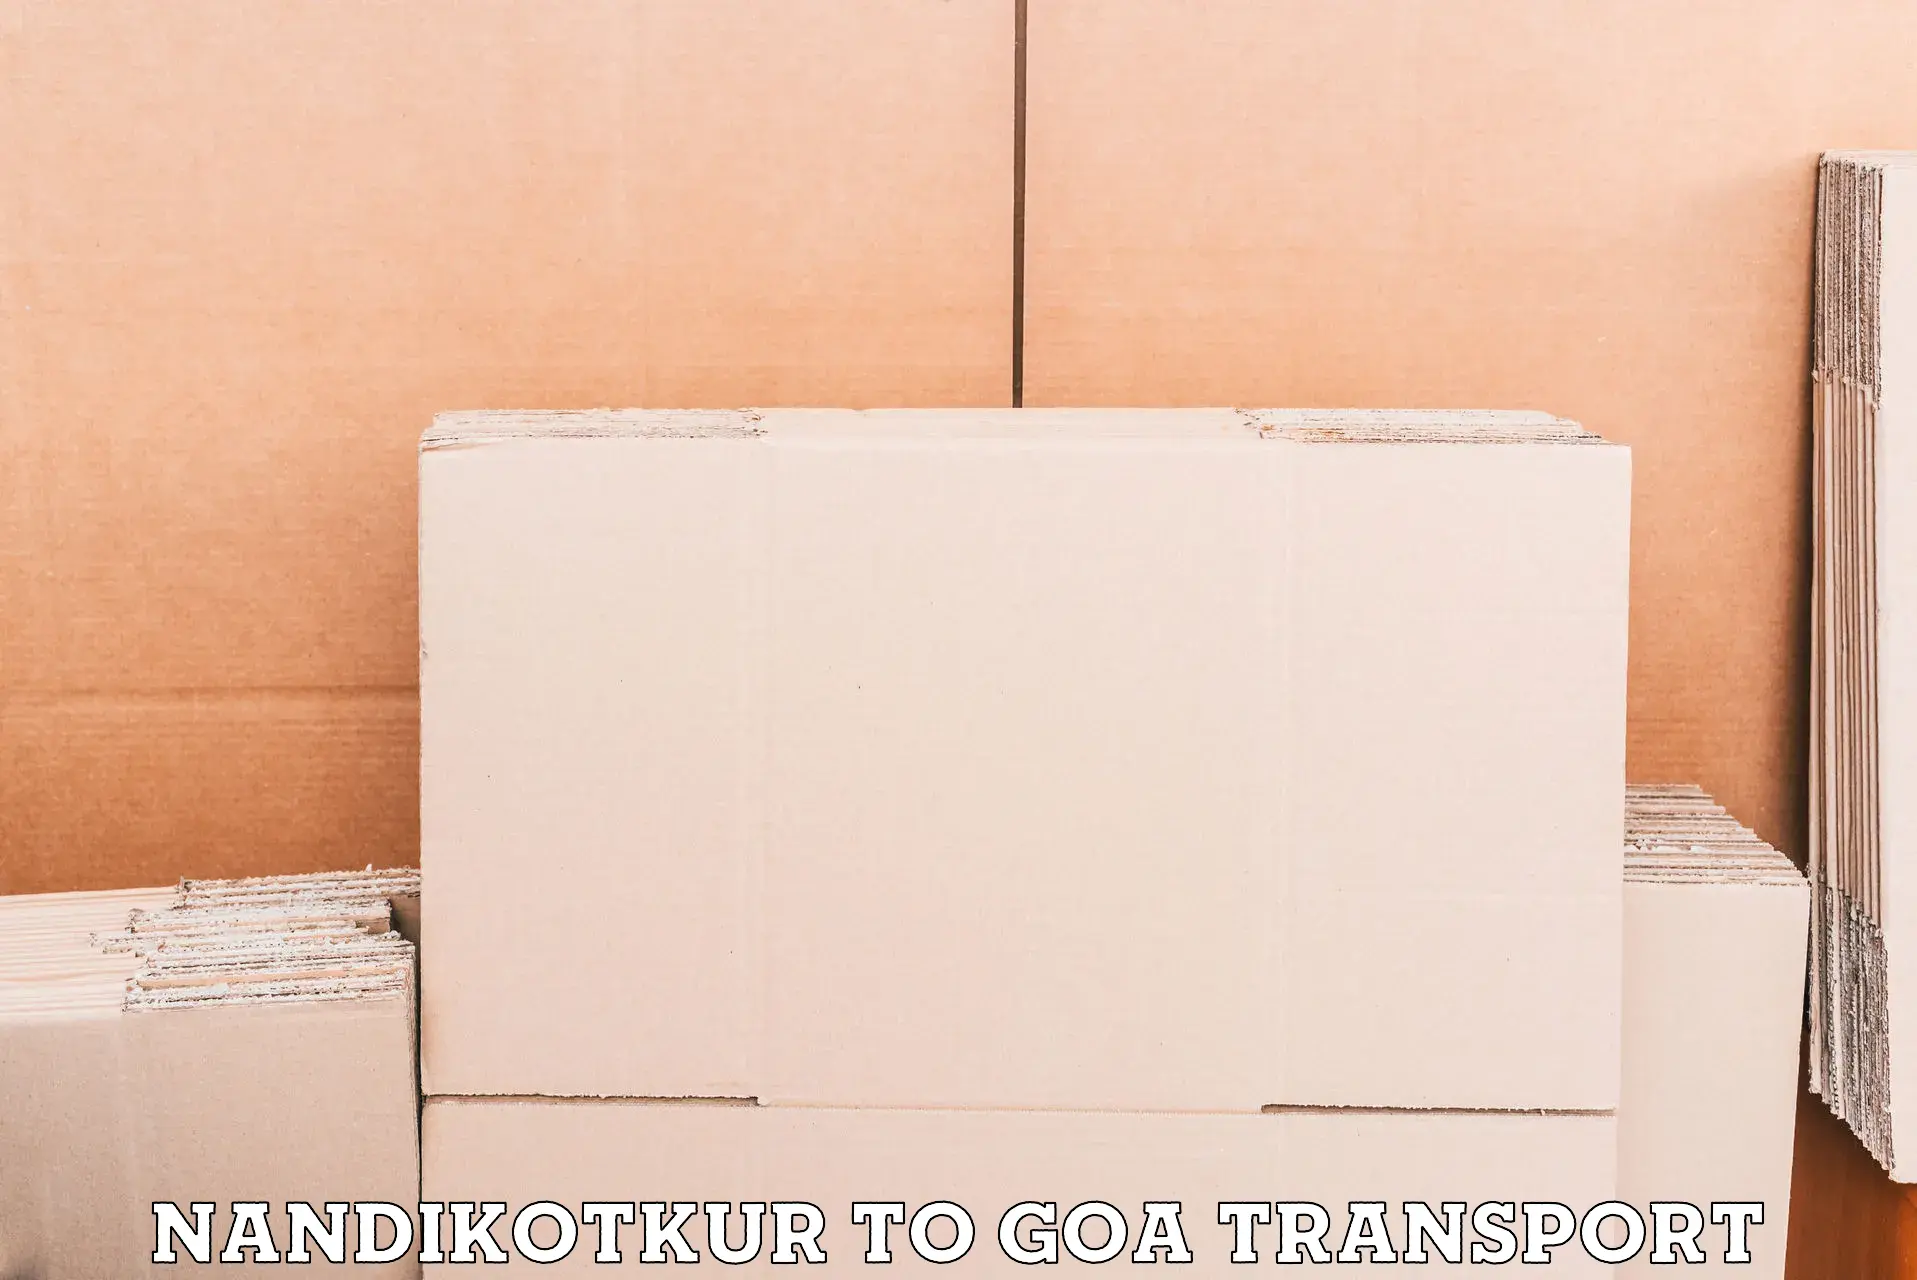 Furniture transport service Nandikotkur to IIT Goa